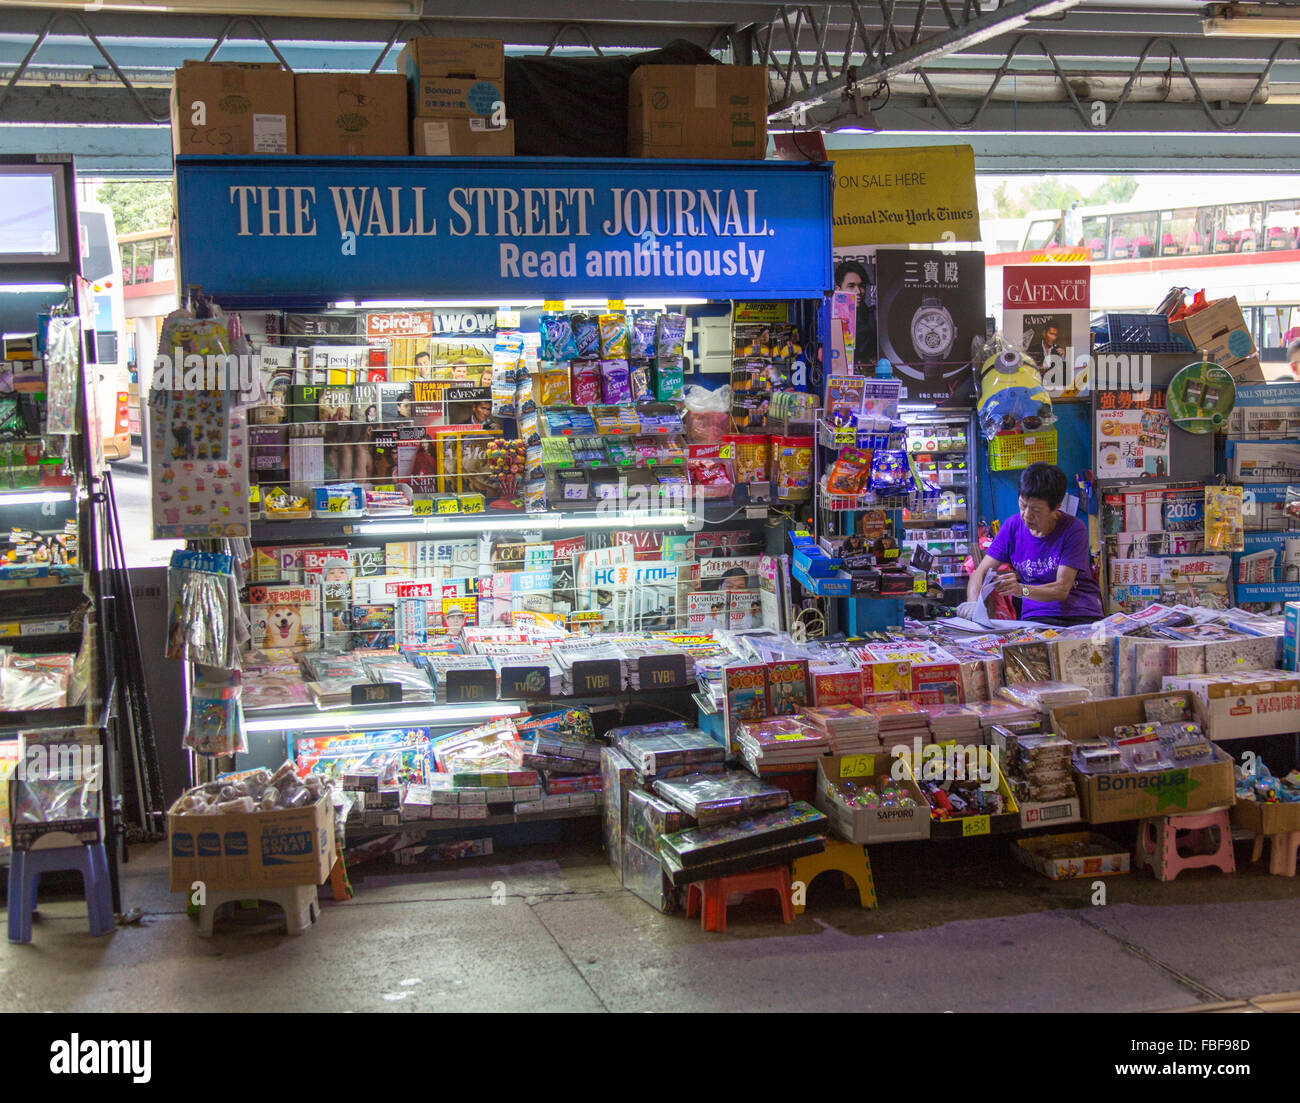 The Wall street Journal newspaper kiosk, Hong Kong market. Stock Photo